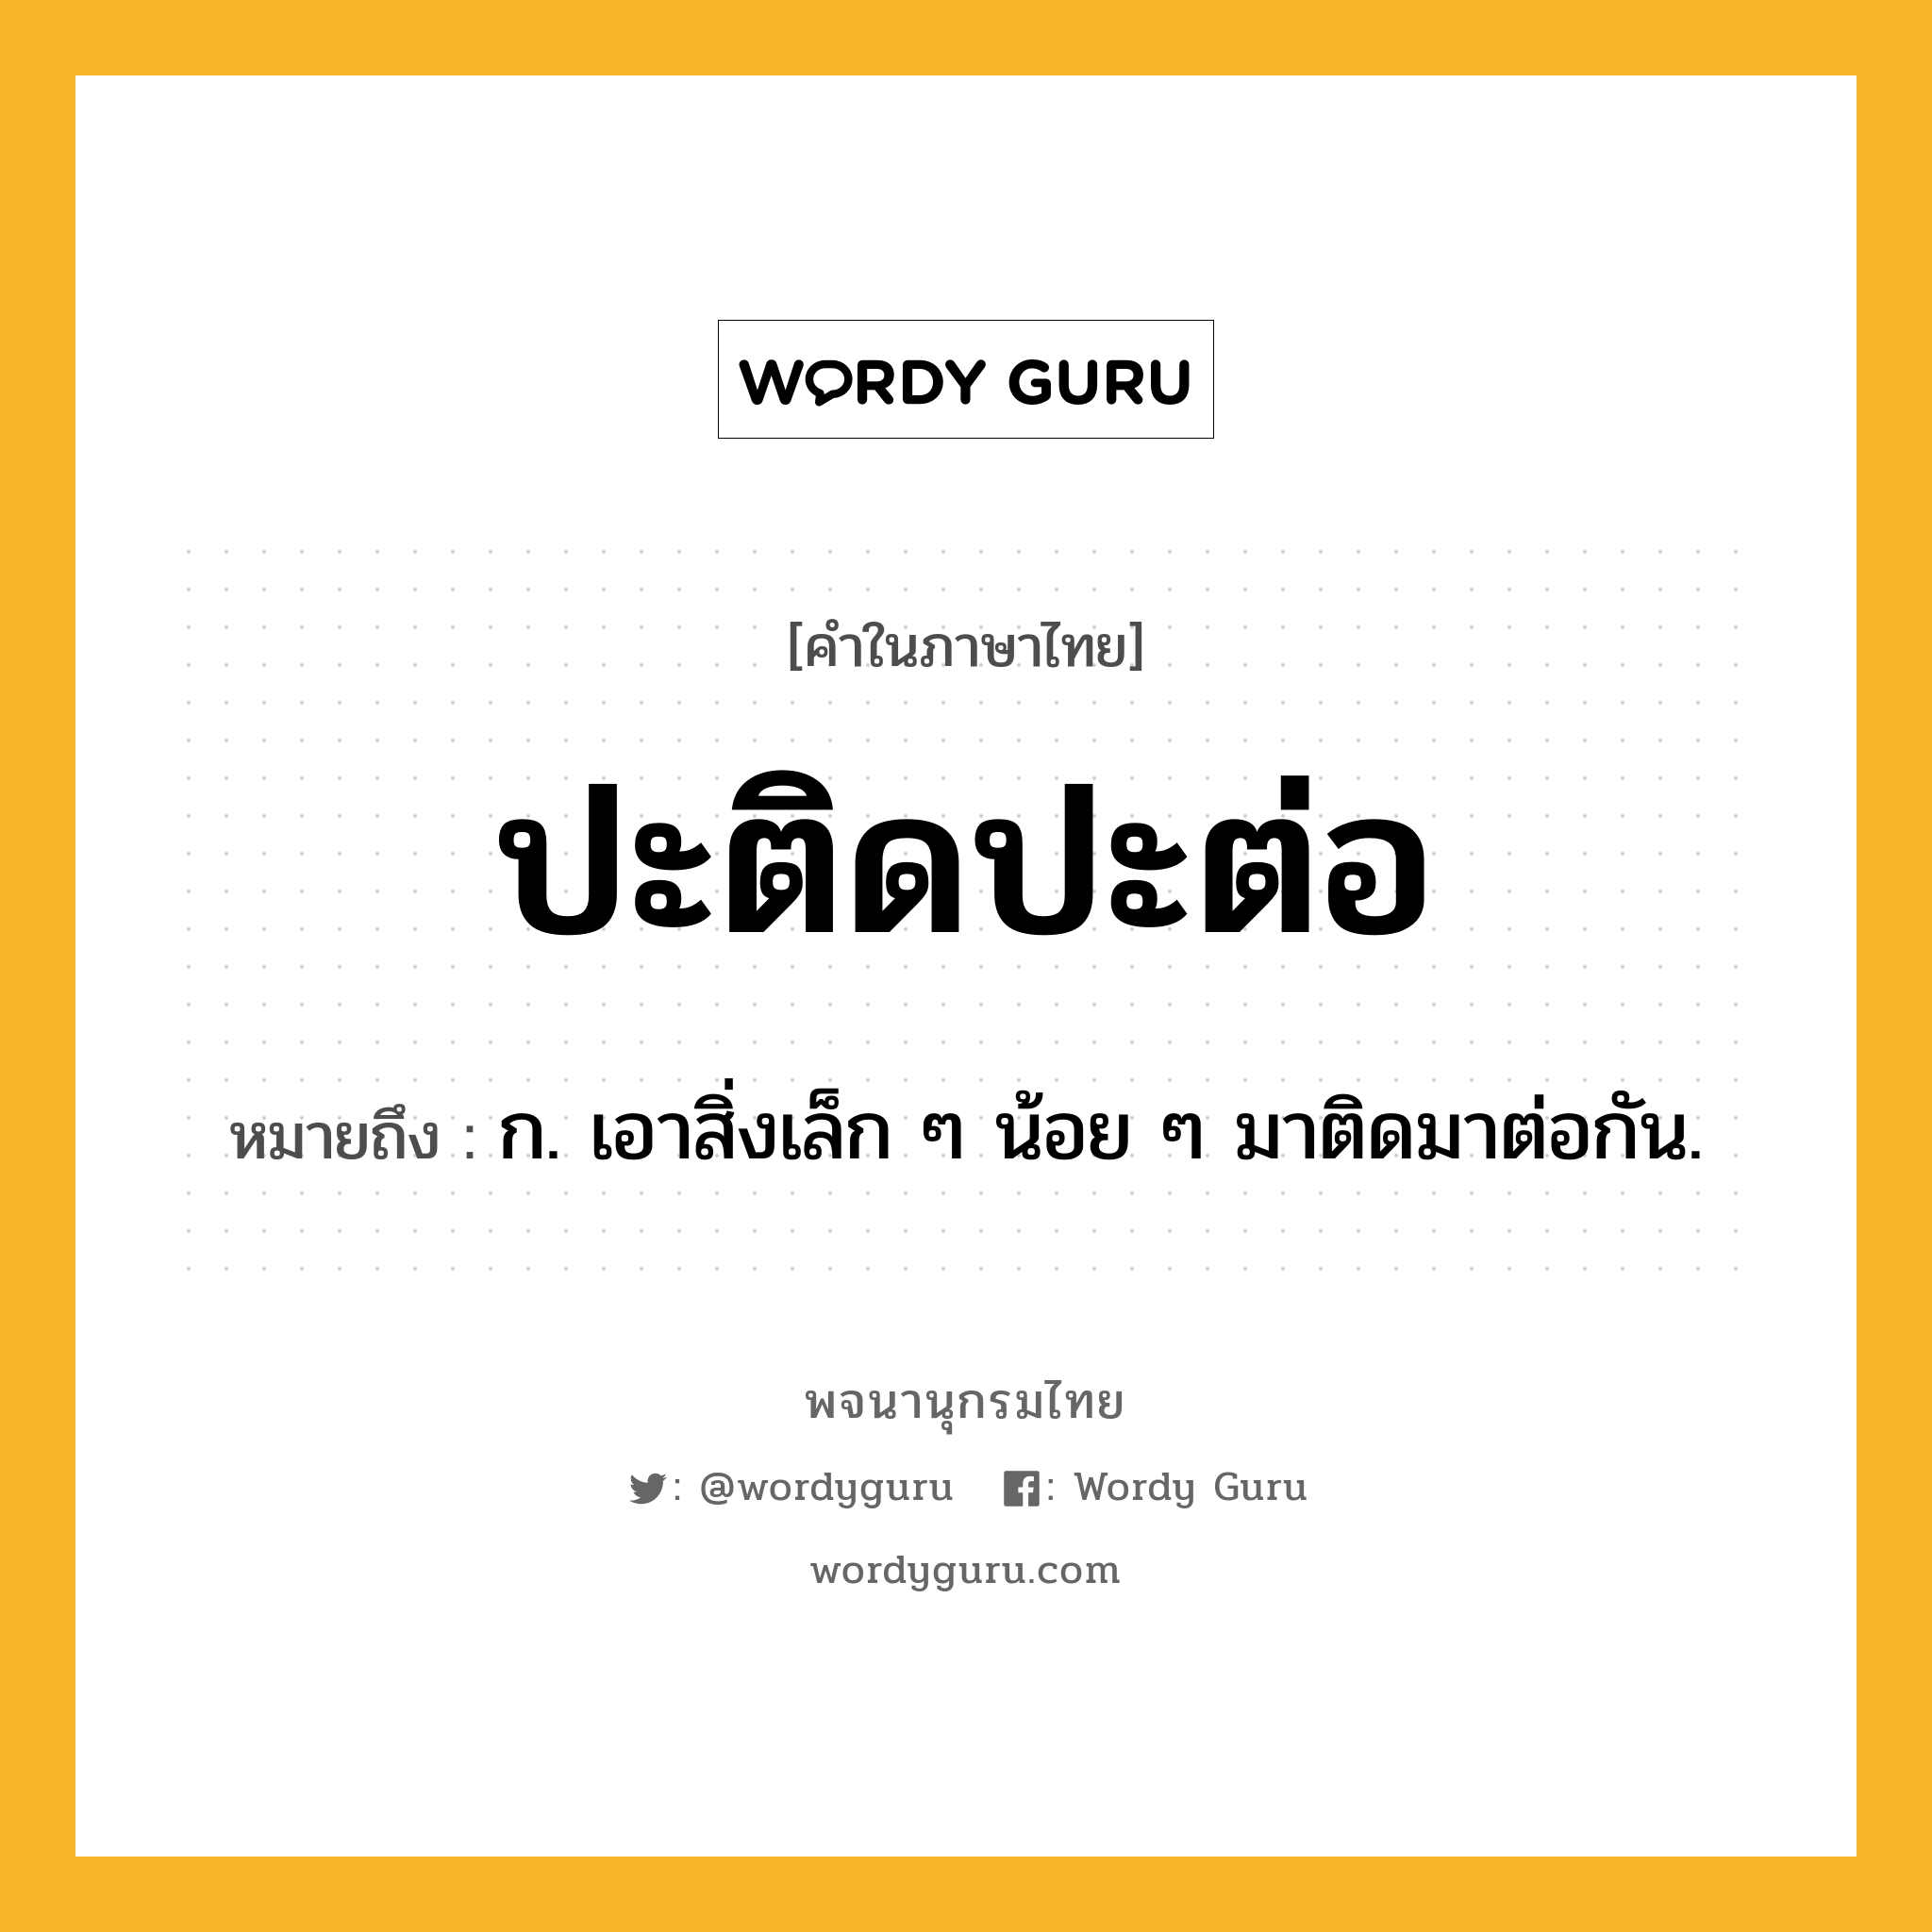 ปะติดปะต่อ หมายถึงอะไร?, คำในภาษาไทย ปะติดปะต่อ หมายถึง ก. เอาสิ่งเล็ก ๆ น้อย ๆ มาติดมาต่อกัน.